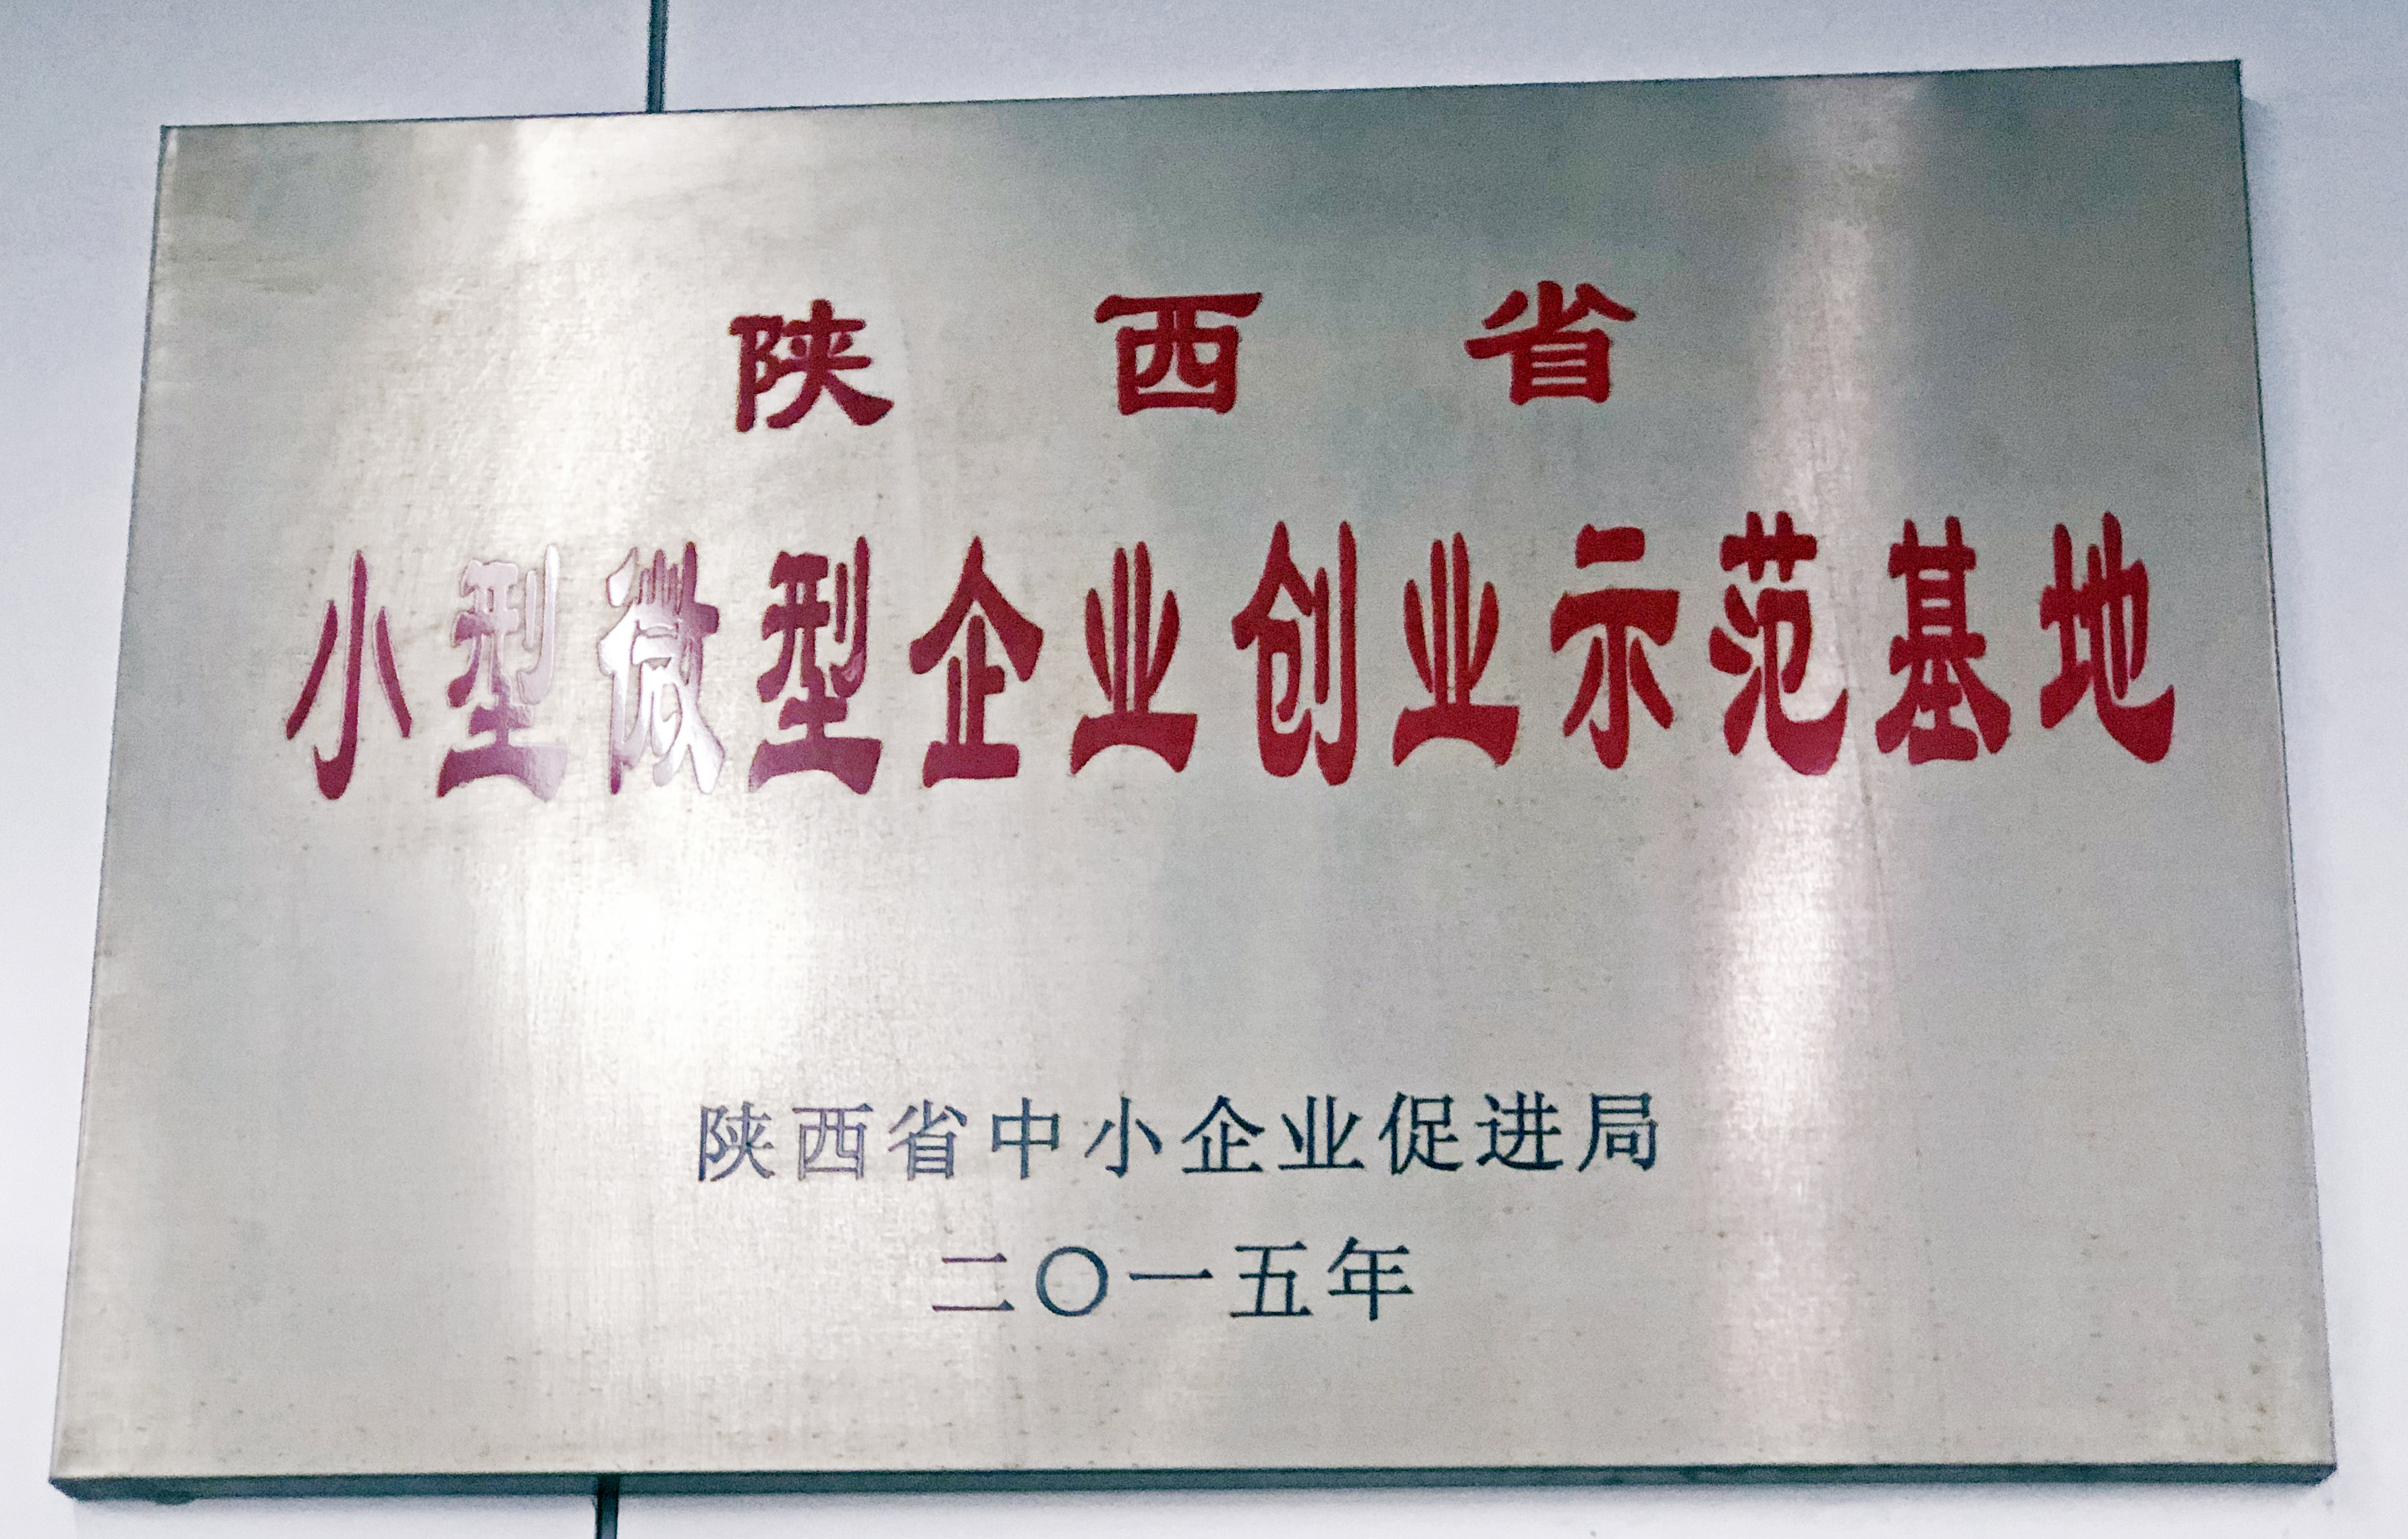 陕西省小型微型企业创业示范基地